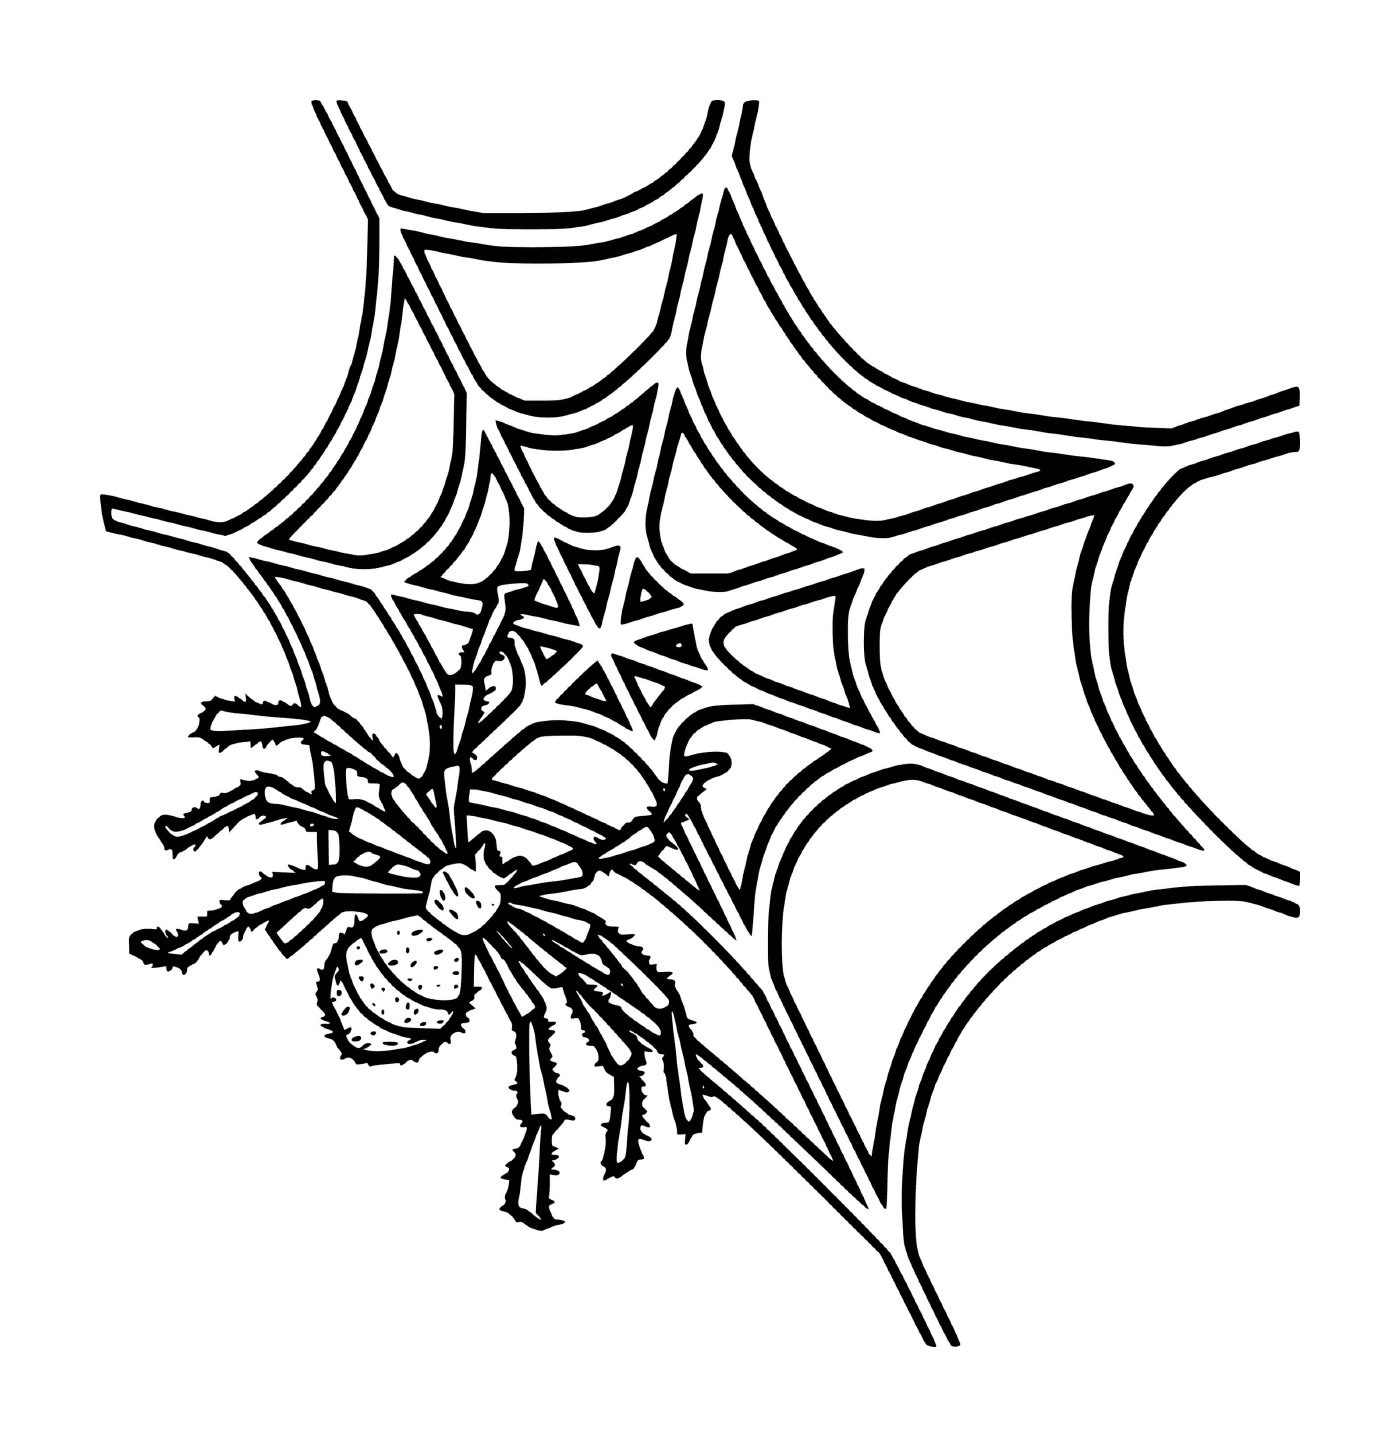  Una araña en una telaraña 